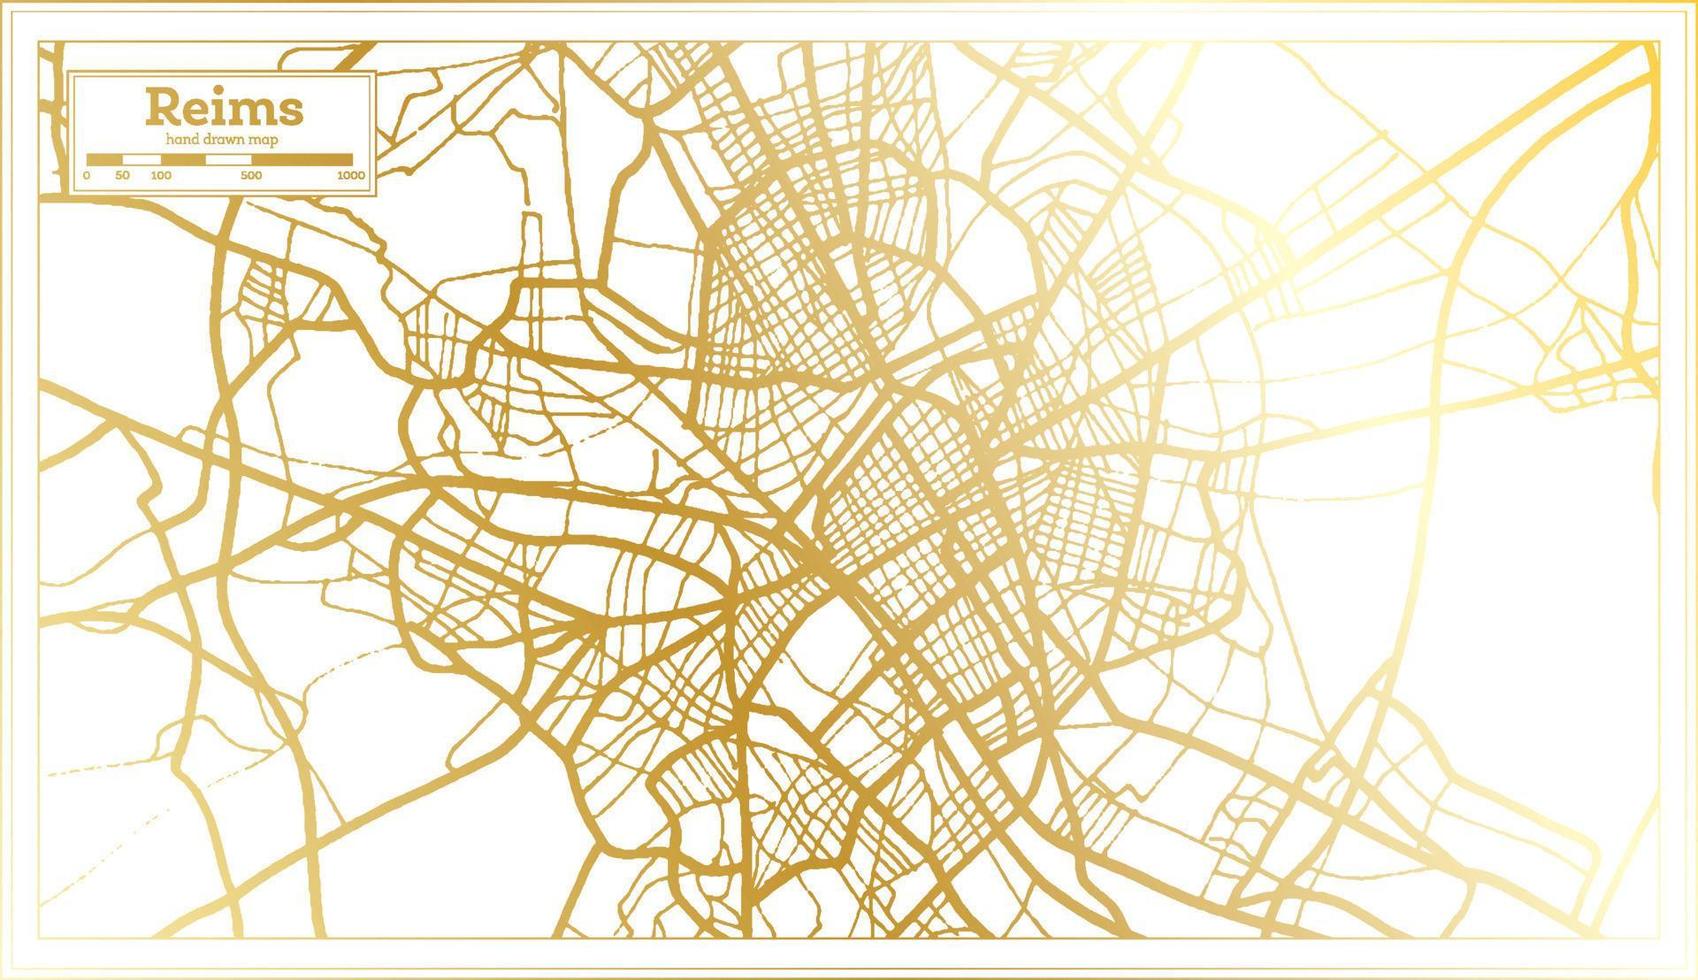 Reims Frankreich Stadtplan im Retro-Stil in goldener Farbe. Übersichtskarte. vektor